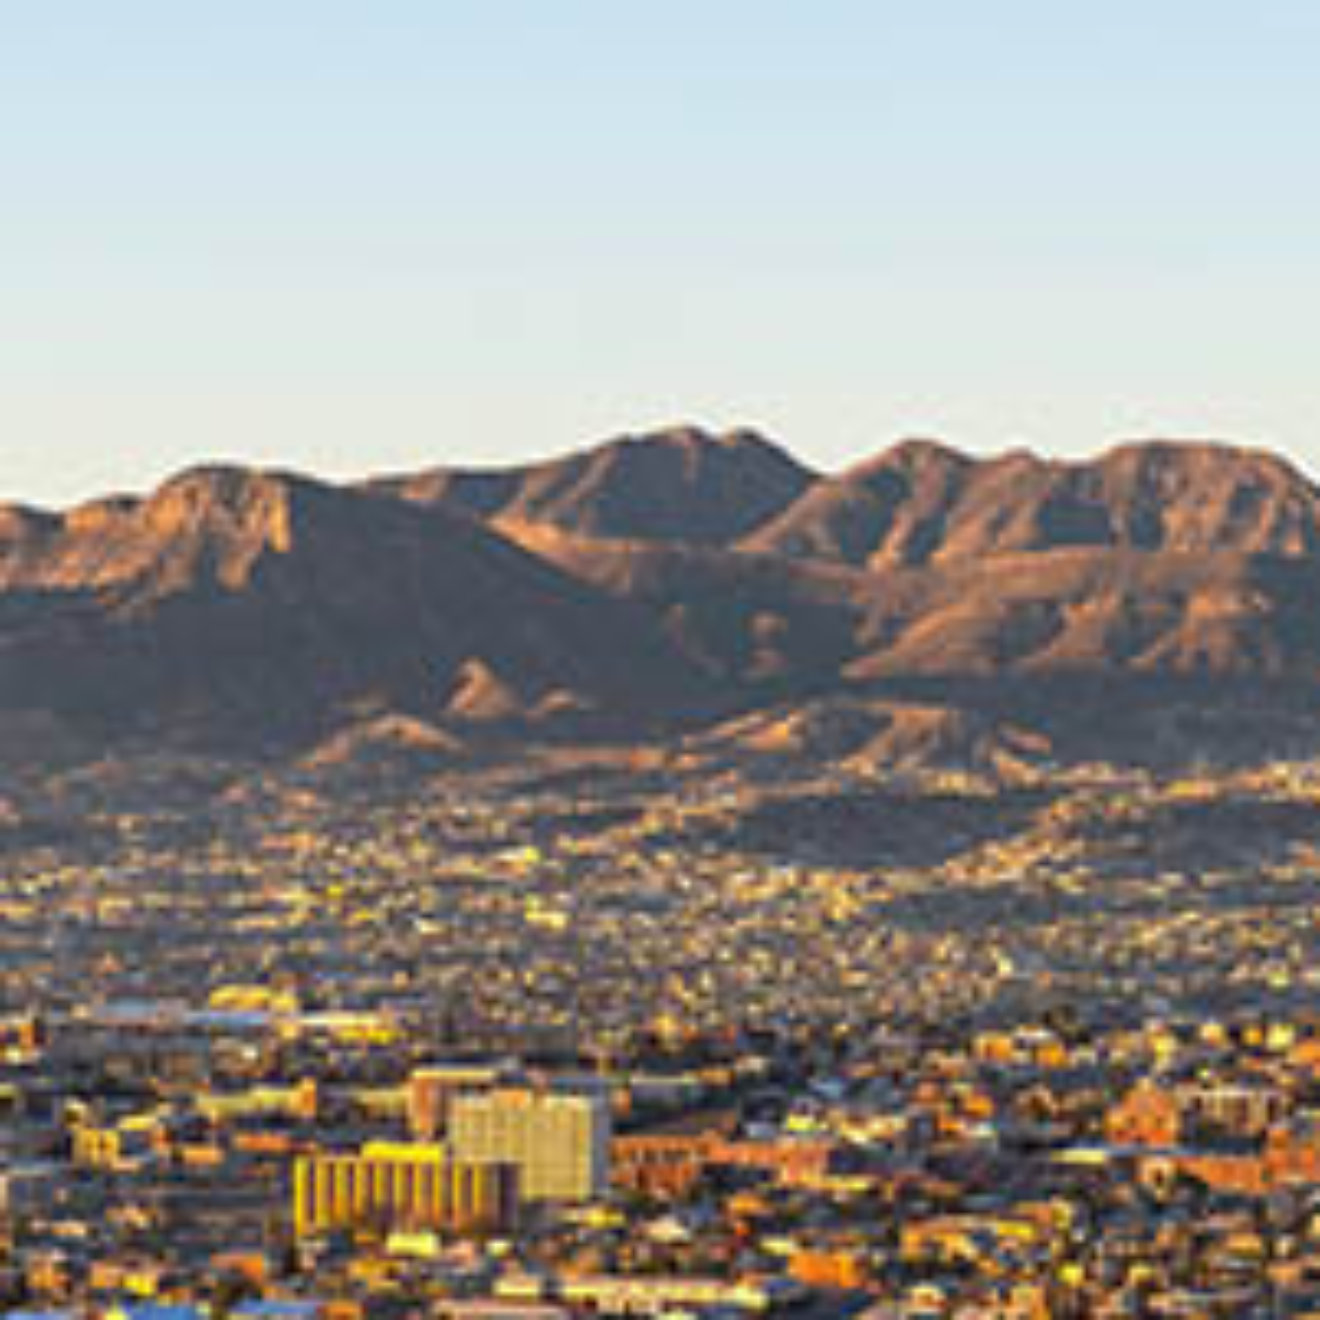 El Paso skyline